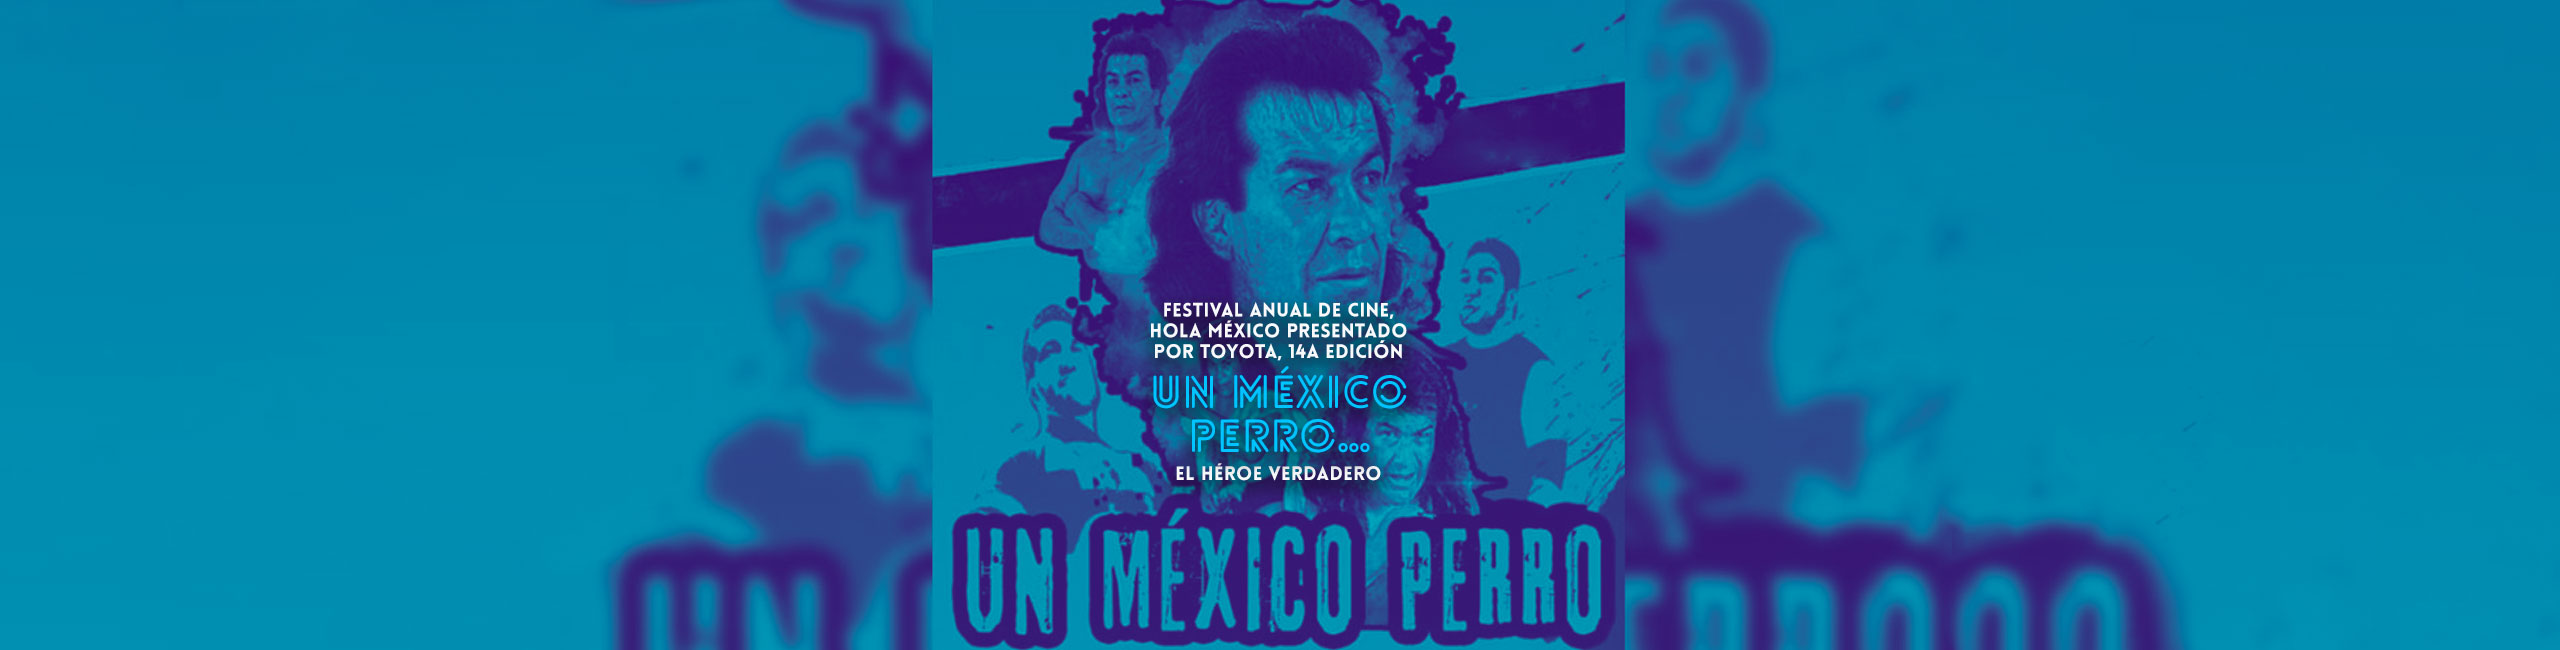 Festival anual de cine, Hola México presentado por Toyota, 14a edición: Alfombra Roja  UN MÉXICO PERRO… EL HÉROE VERDADERO